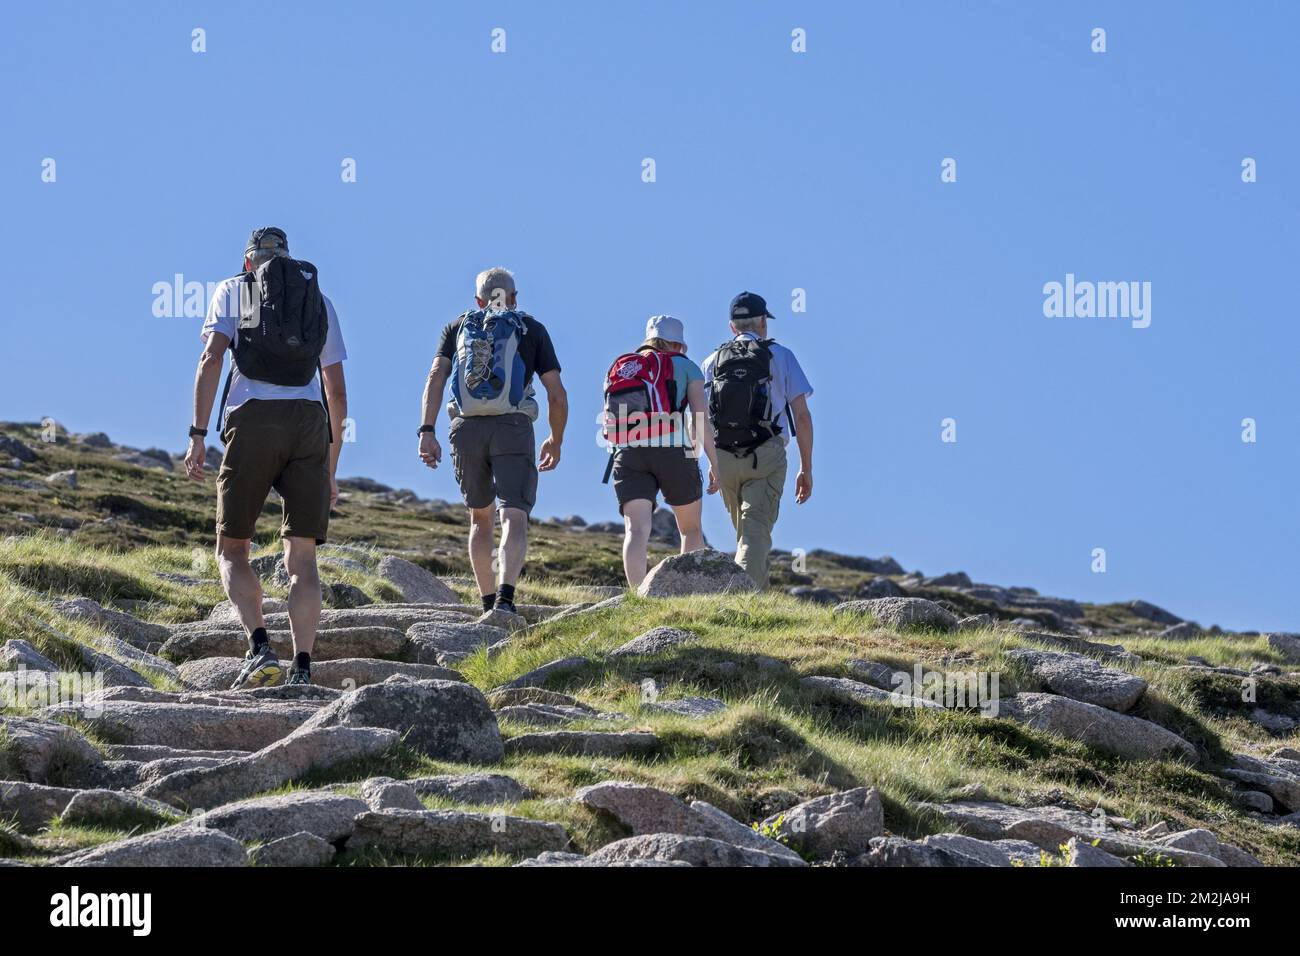 Vier Touristen mit Rucksäcken, die im Frühjahr/Sommer auf Bergwegen im Cairngorms National Park, Highland, Schottland, Großbritannien | Promeneurs dans le Parc National de Cairngorms, Ecosse, Royaume-Uni 30/08/2018 Stockfoto